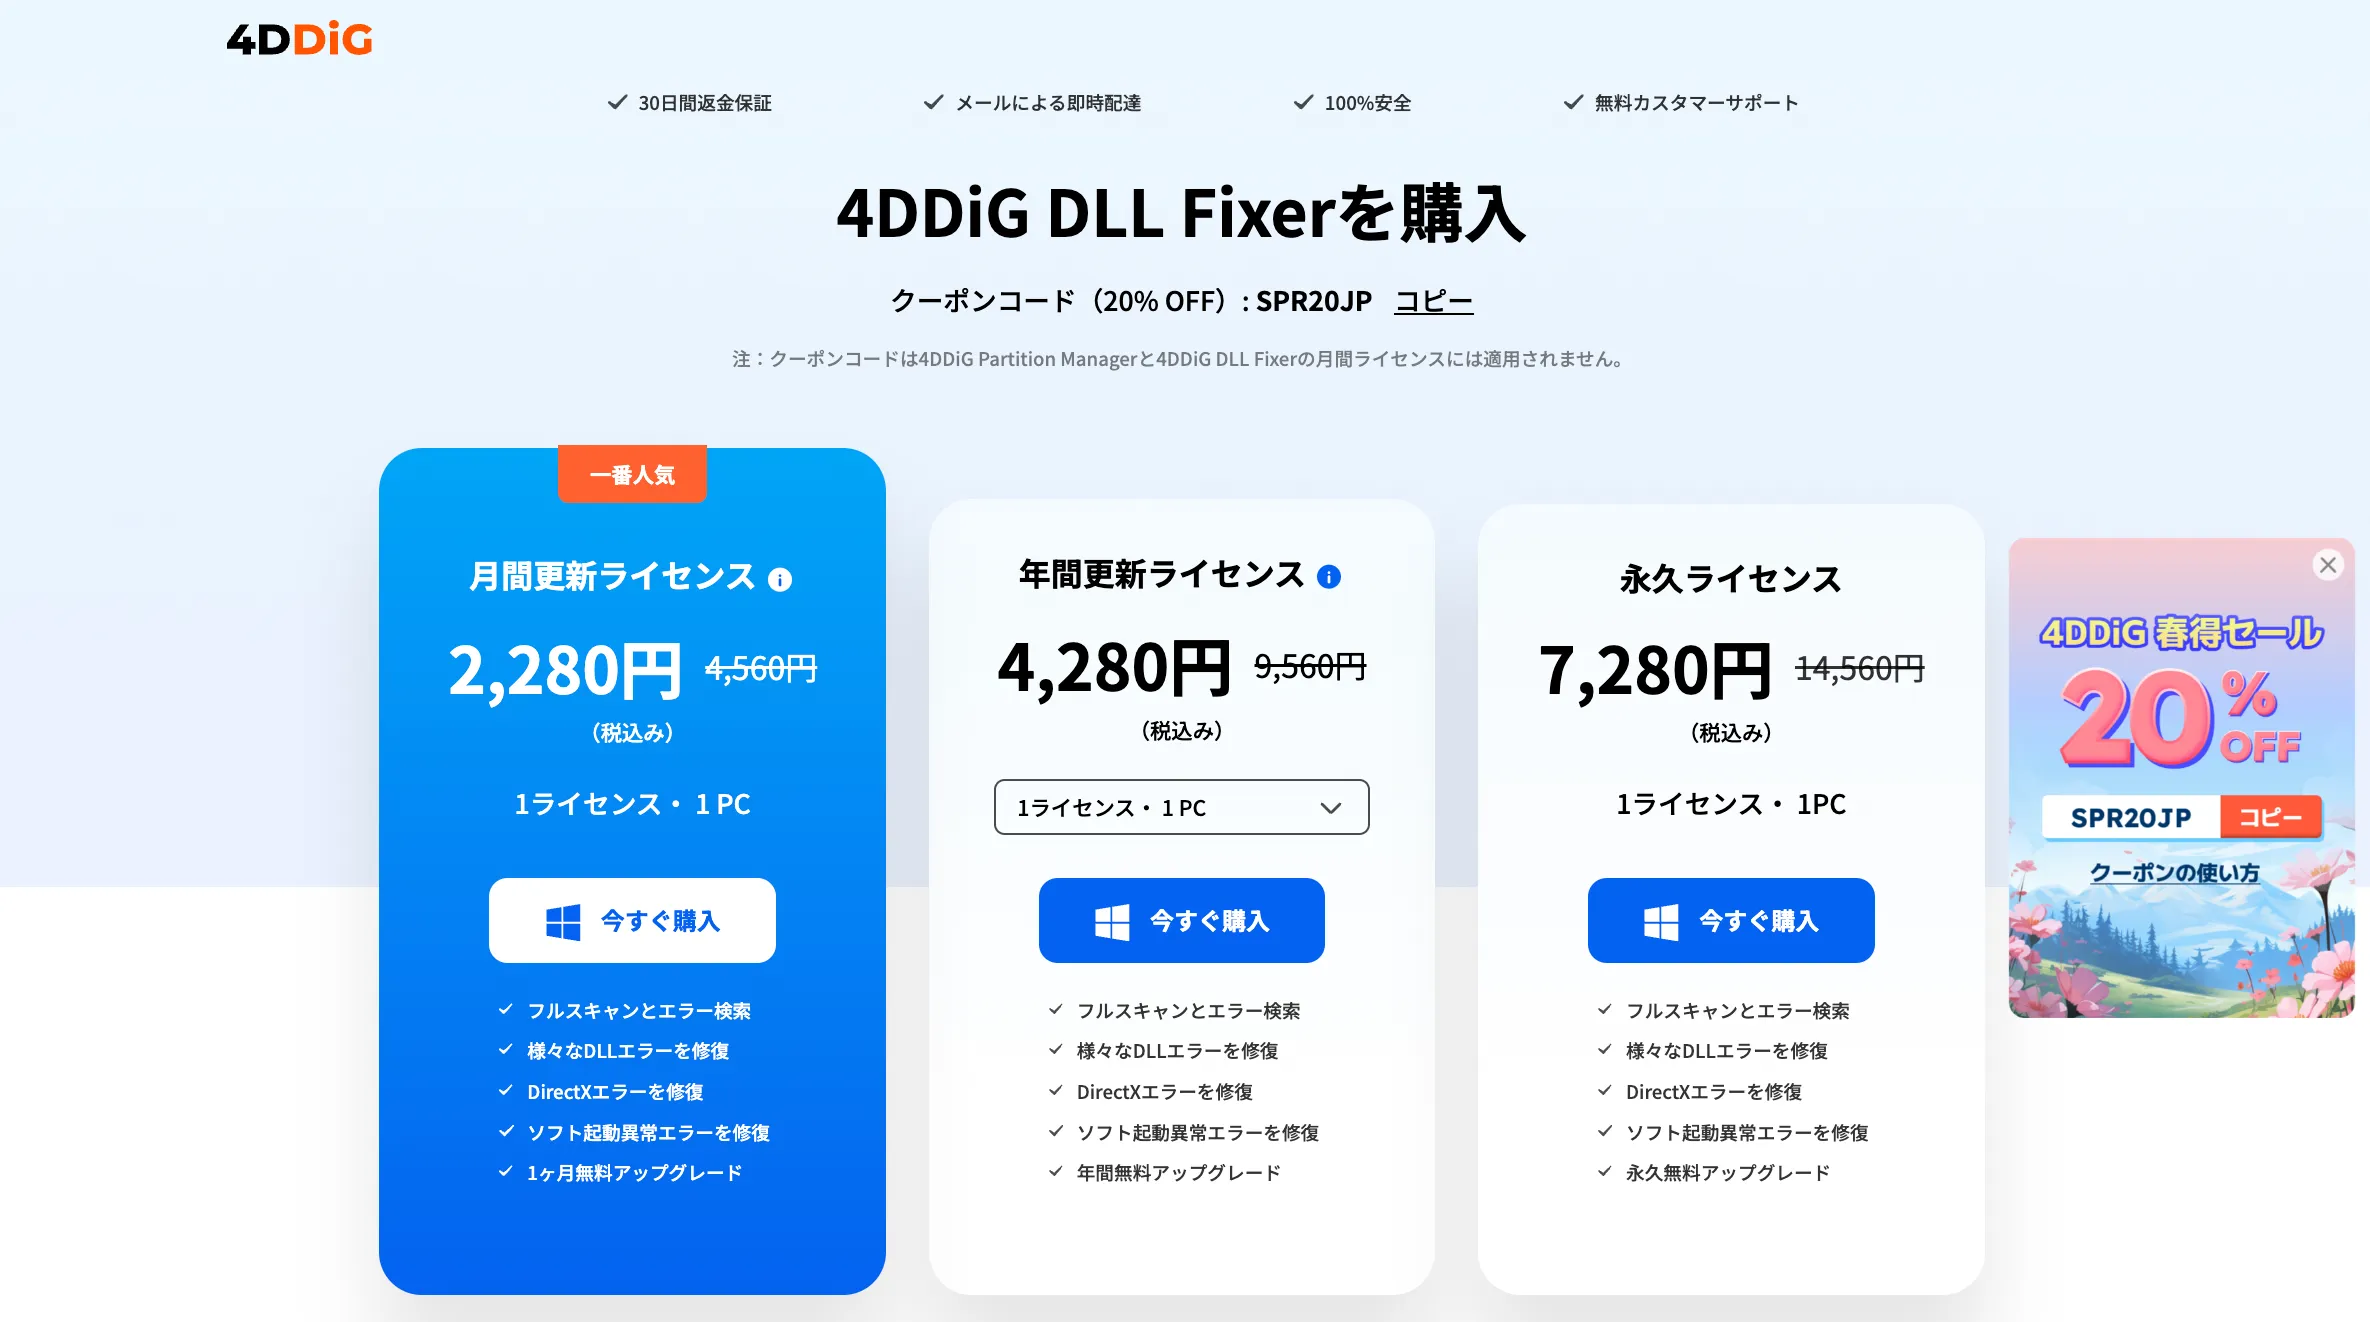 4DDiG DLL Fixerセール